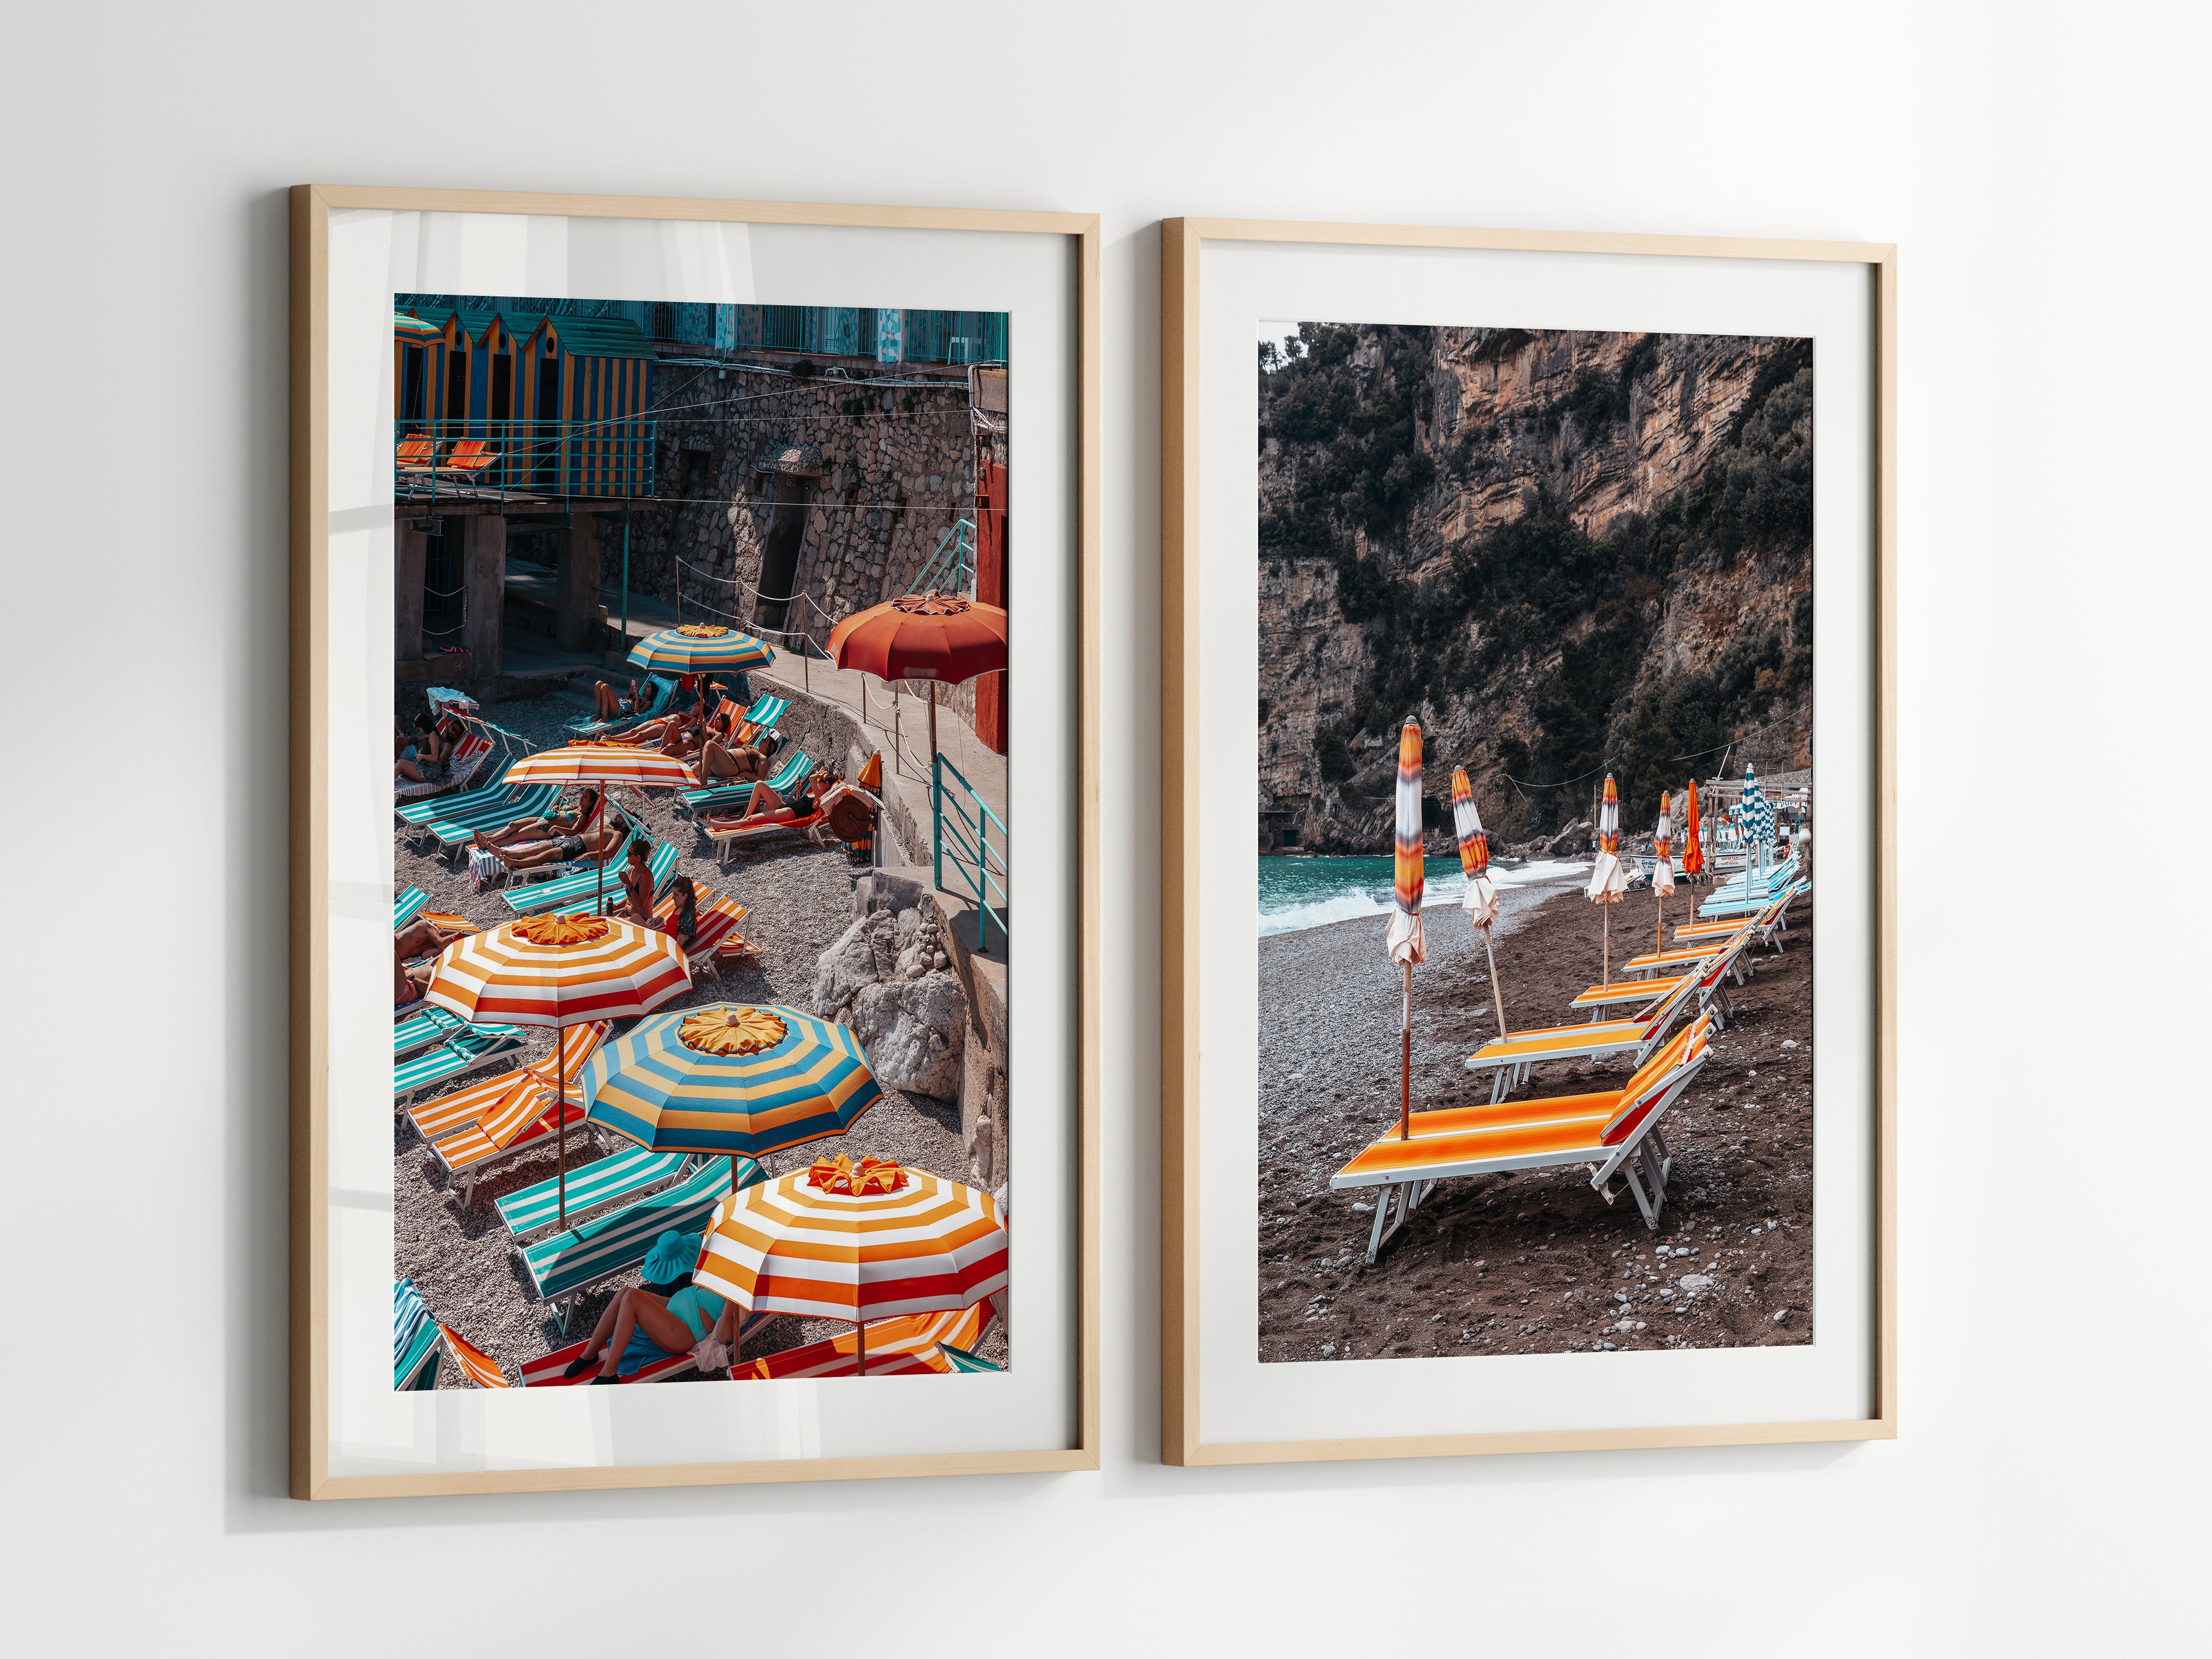 capri-beach-umbrellas-vintage-edit-2_322e8f29-be2d-4b5c-8b35-ec2685b6a7ab - Departures Print Shop